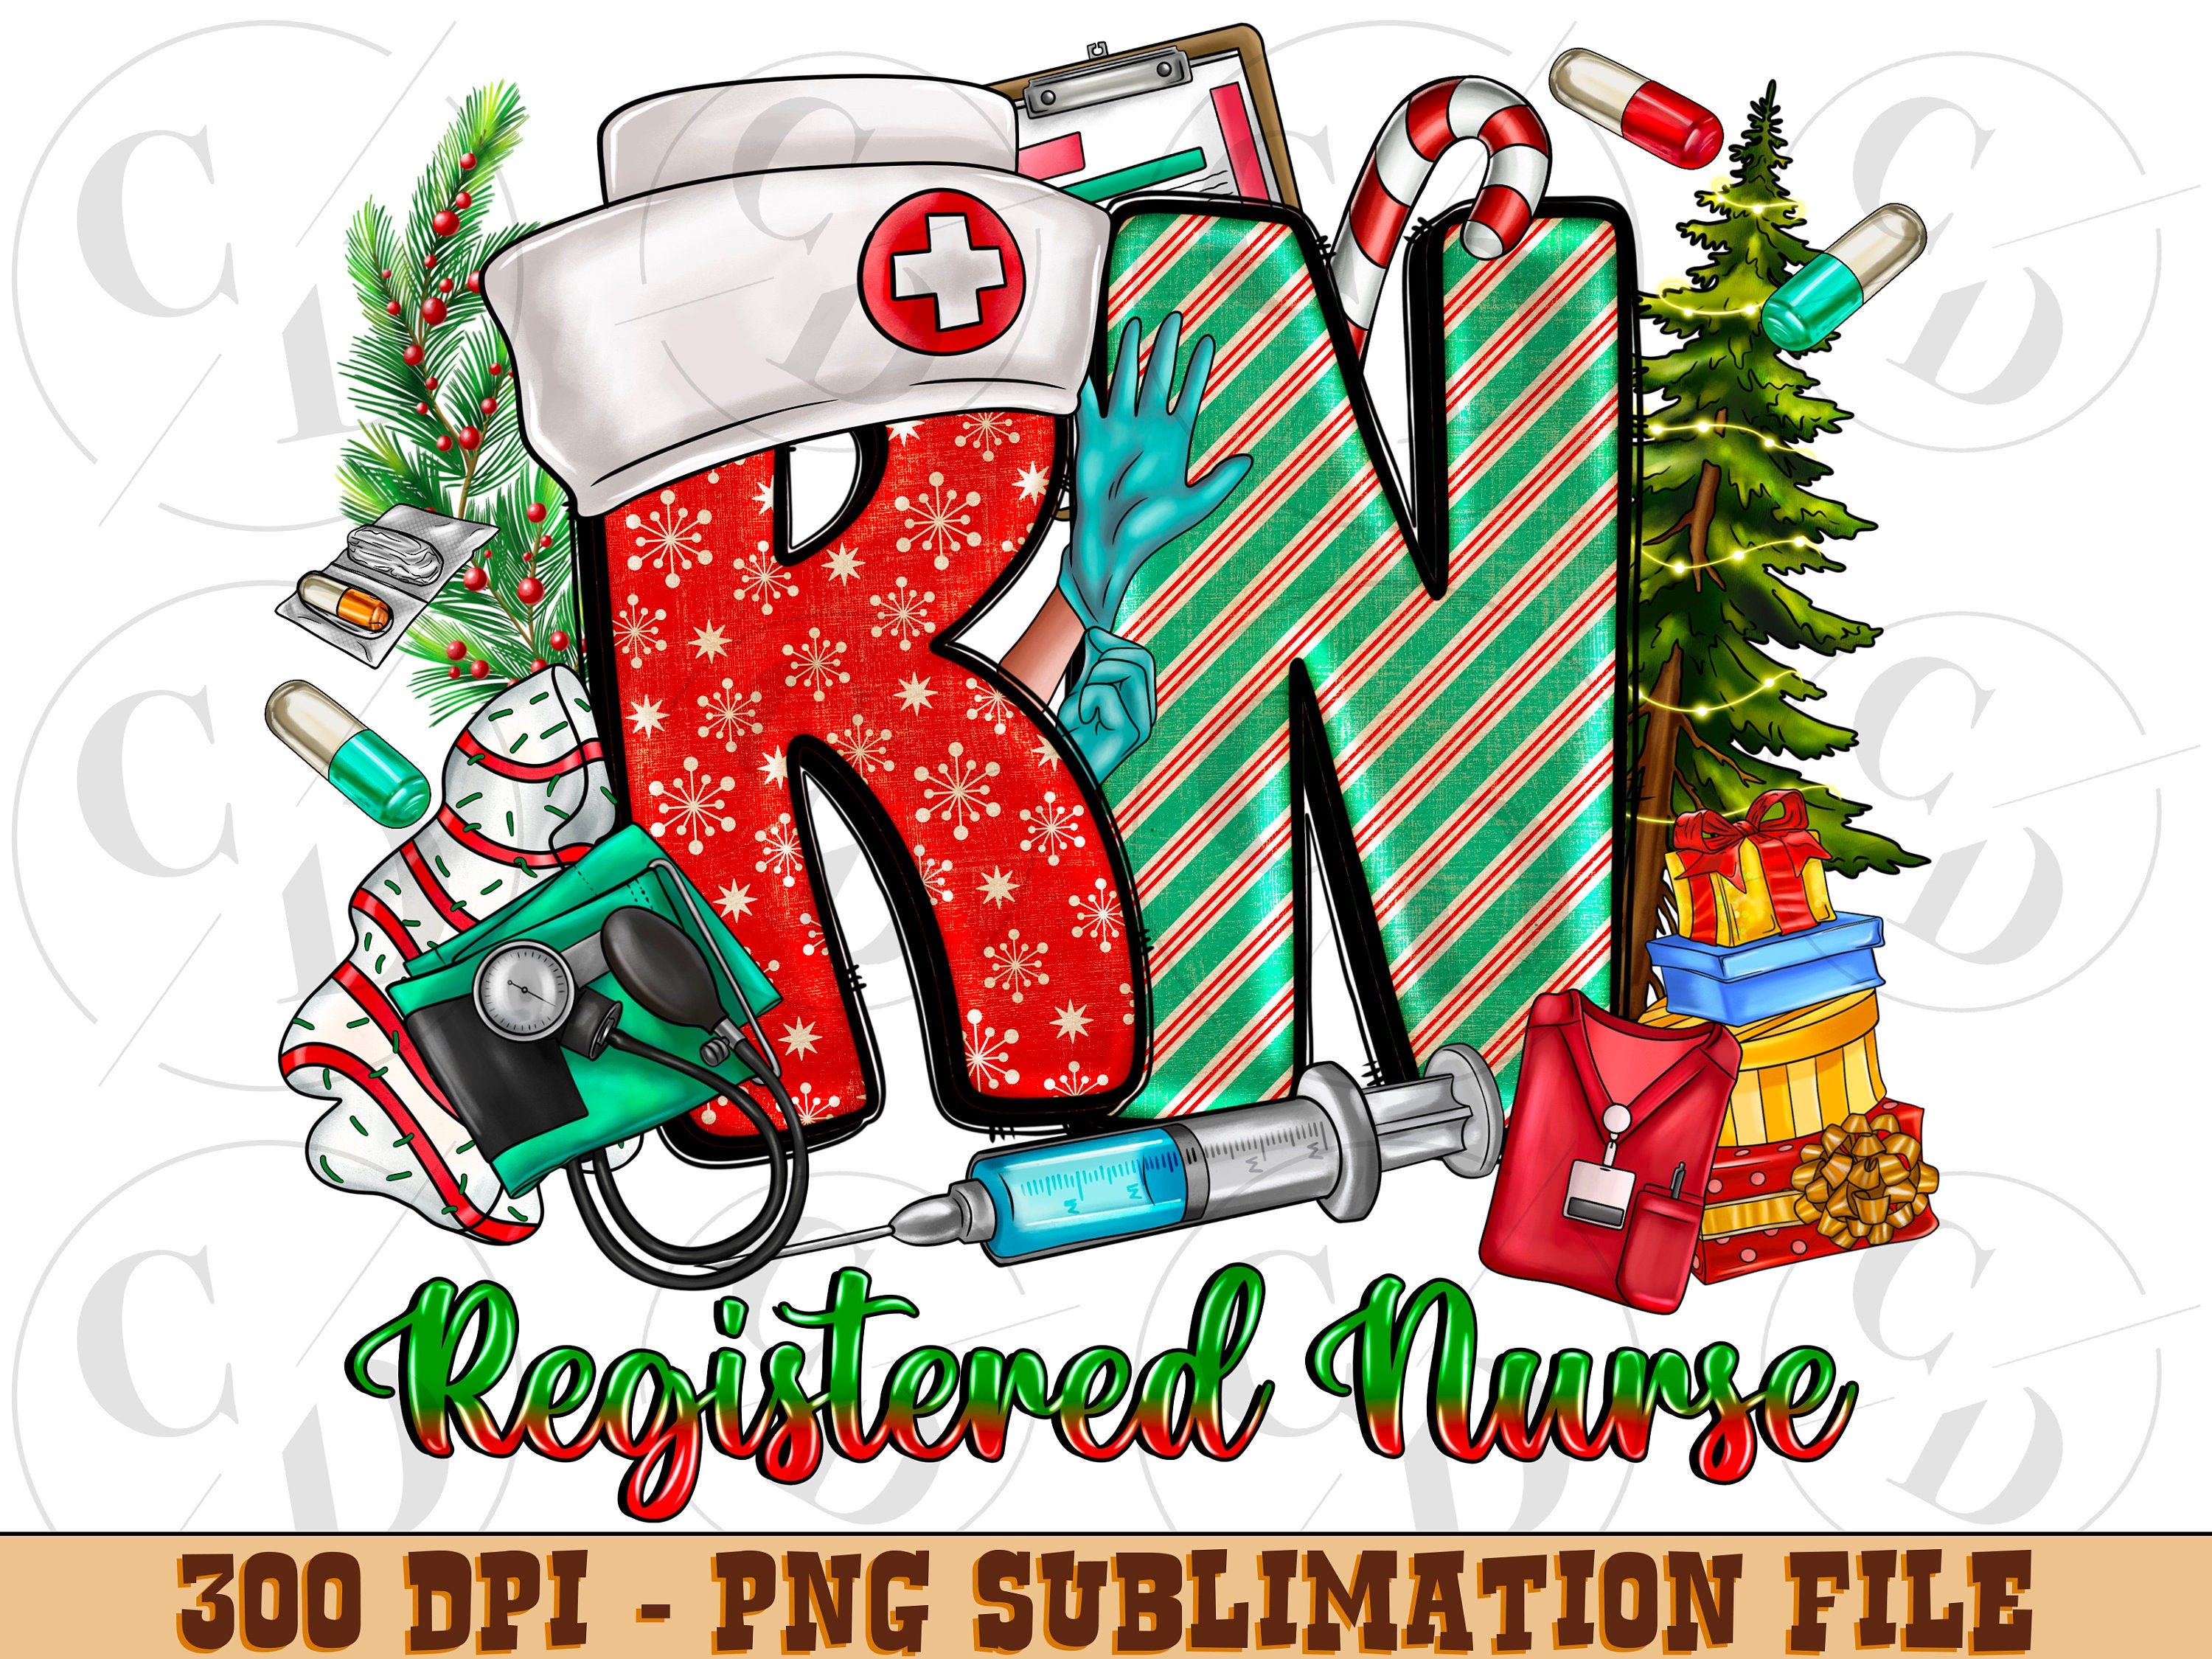 RN Registered Nurse png sublimation design download, Nurse life Christmas png, Nursing Christmas png, western RN Christmas png, sublimate